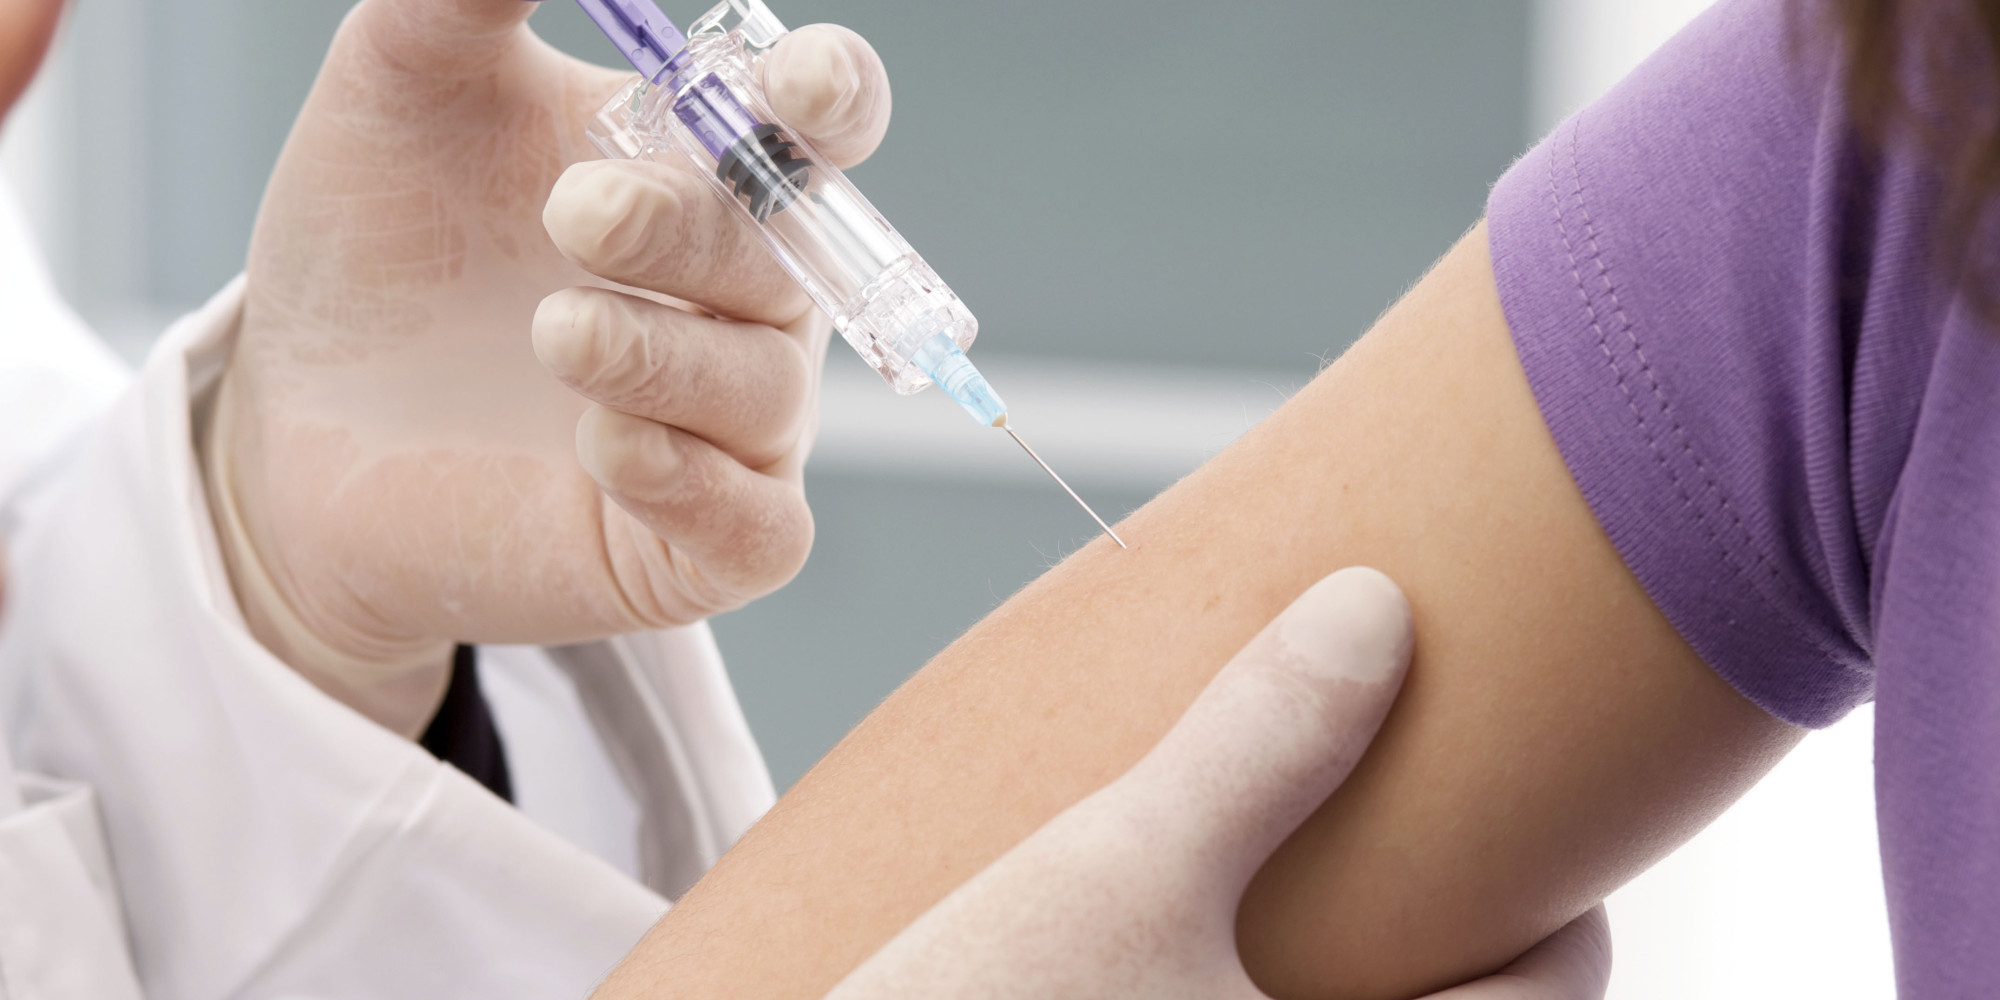 Δωρεάν εμβόλια κατά του τραχήλου της μήτρας προσφέρει η GlaxoSmithKline